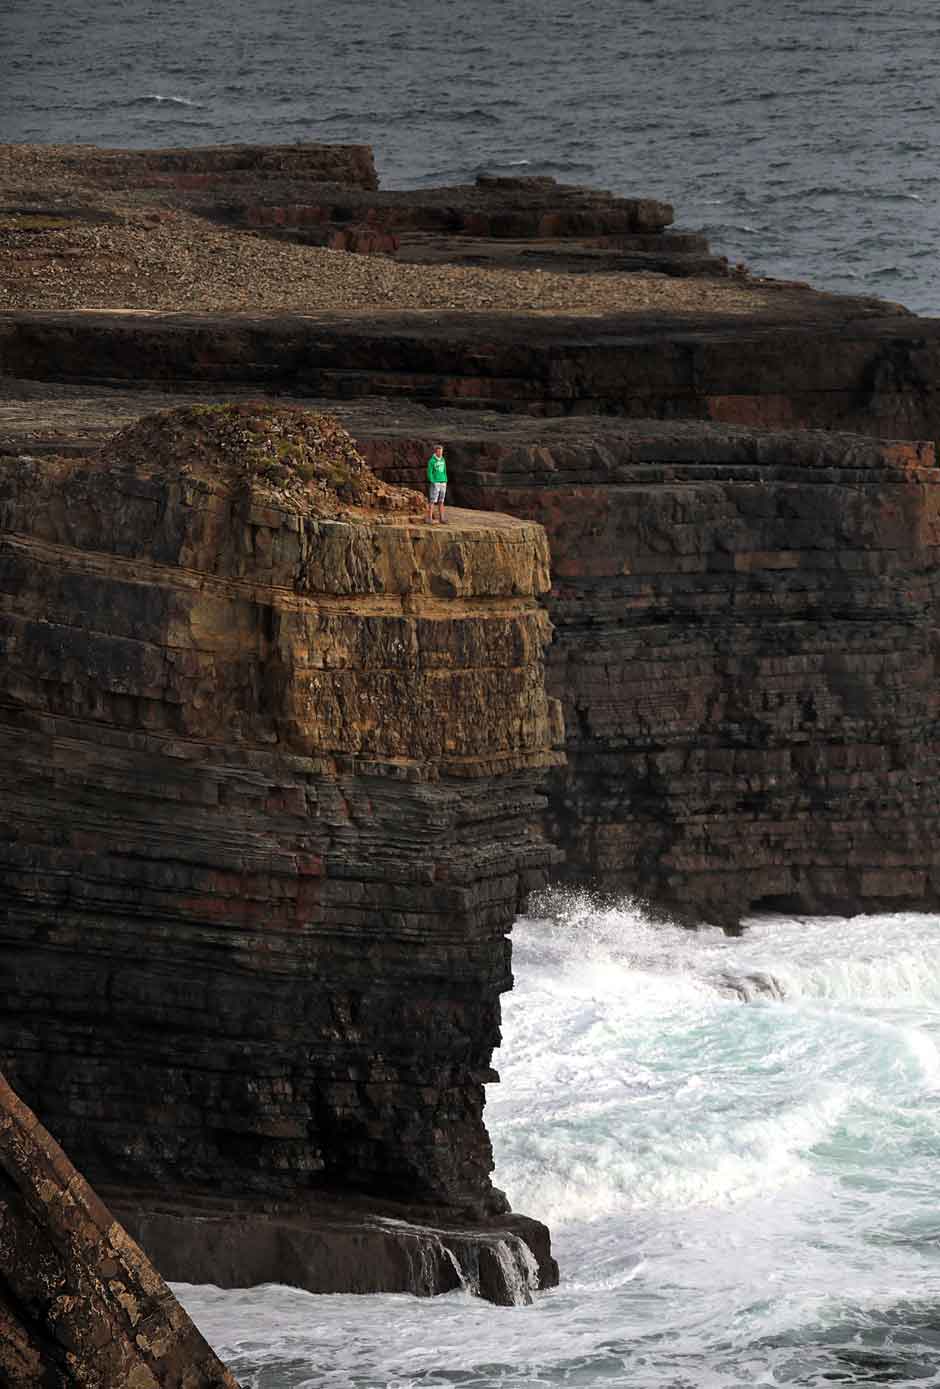 Ruta por los acantilados de Irlanda más espectaculares | Tu Gran Viaje | Turismo de Irlanda